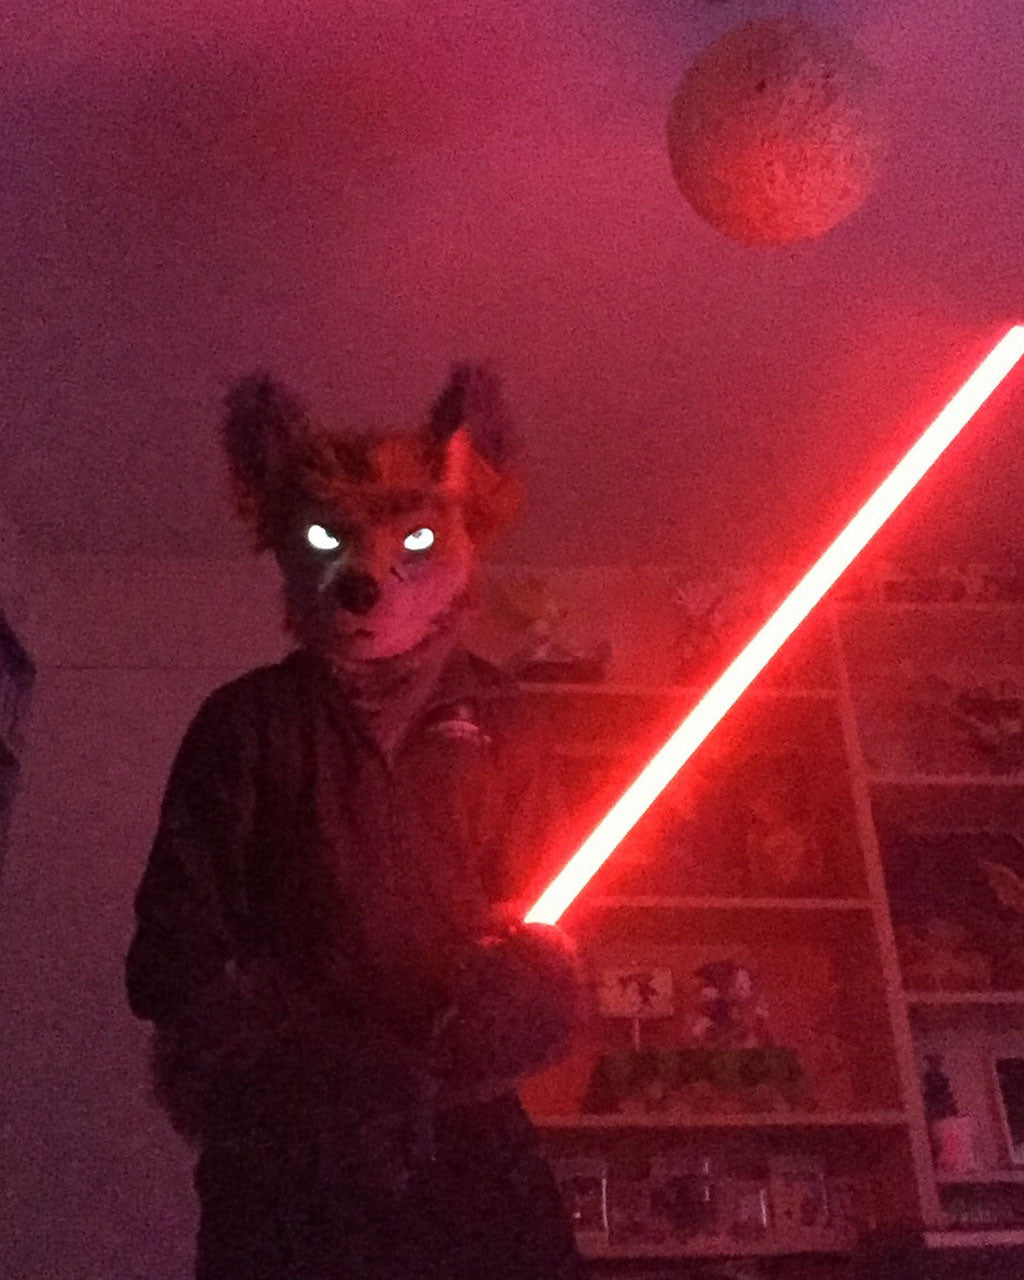 A Star Wars fan in a lightsaber cosplay